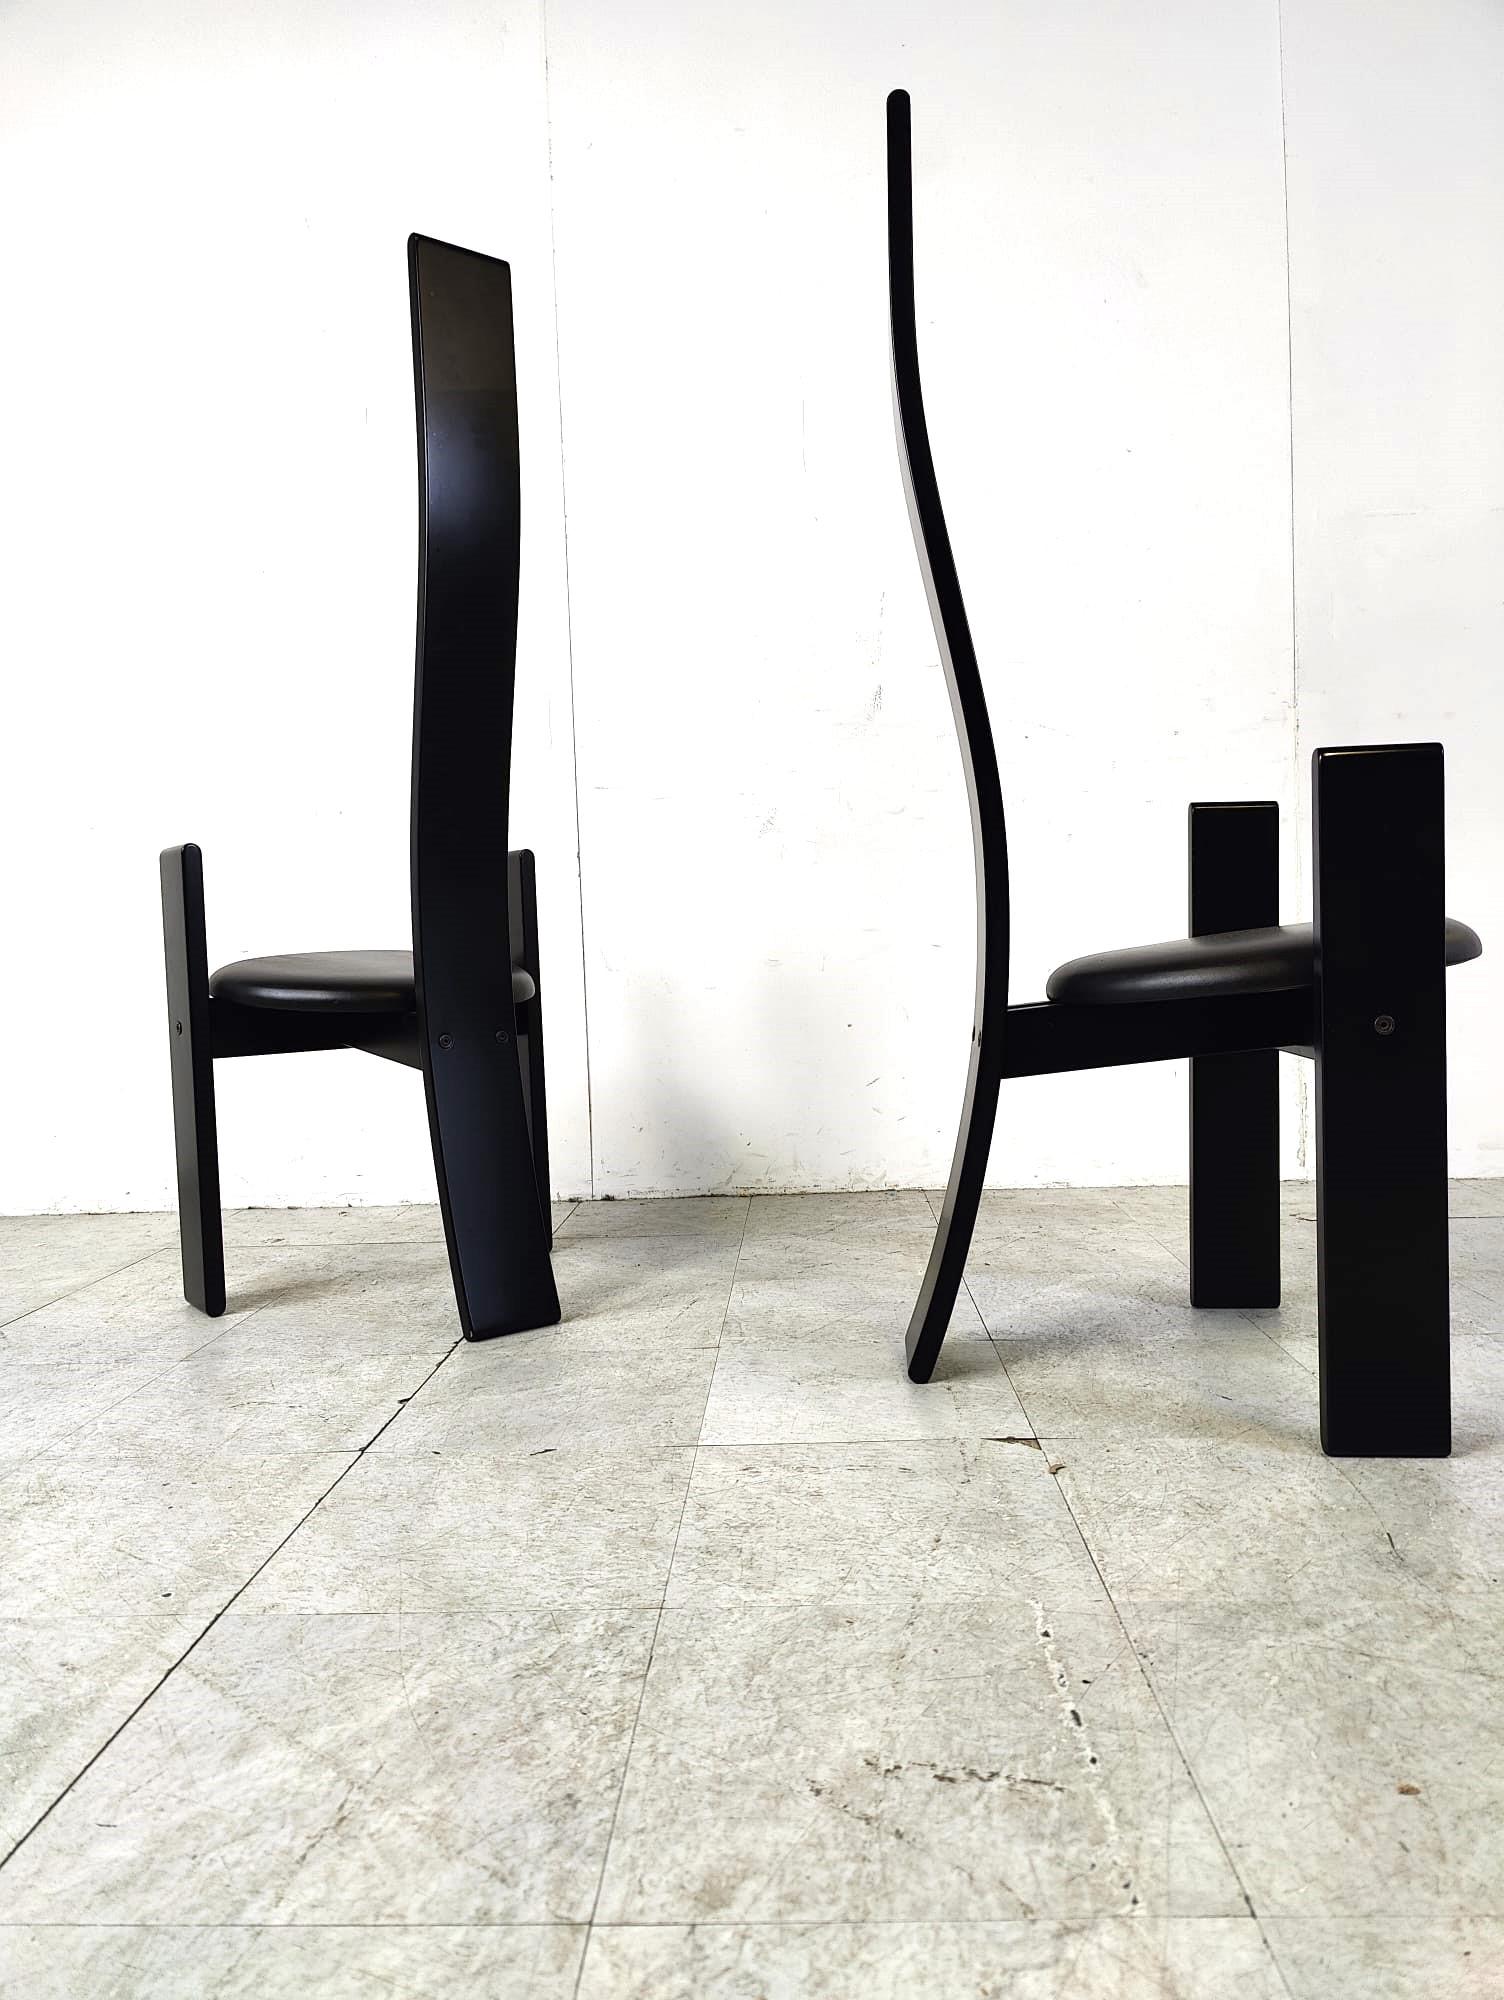 Ensemble de 6 chaises de salle à manger modèle 'Golem' conçu par Vico Magistretti voor Poggi.

Les chaises sont fabriquées en bois laqué noir et recouvertes de skaï noir.

Magnifique design fin et moderne.

Bon état, usure normale liée à l'âge

La